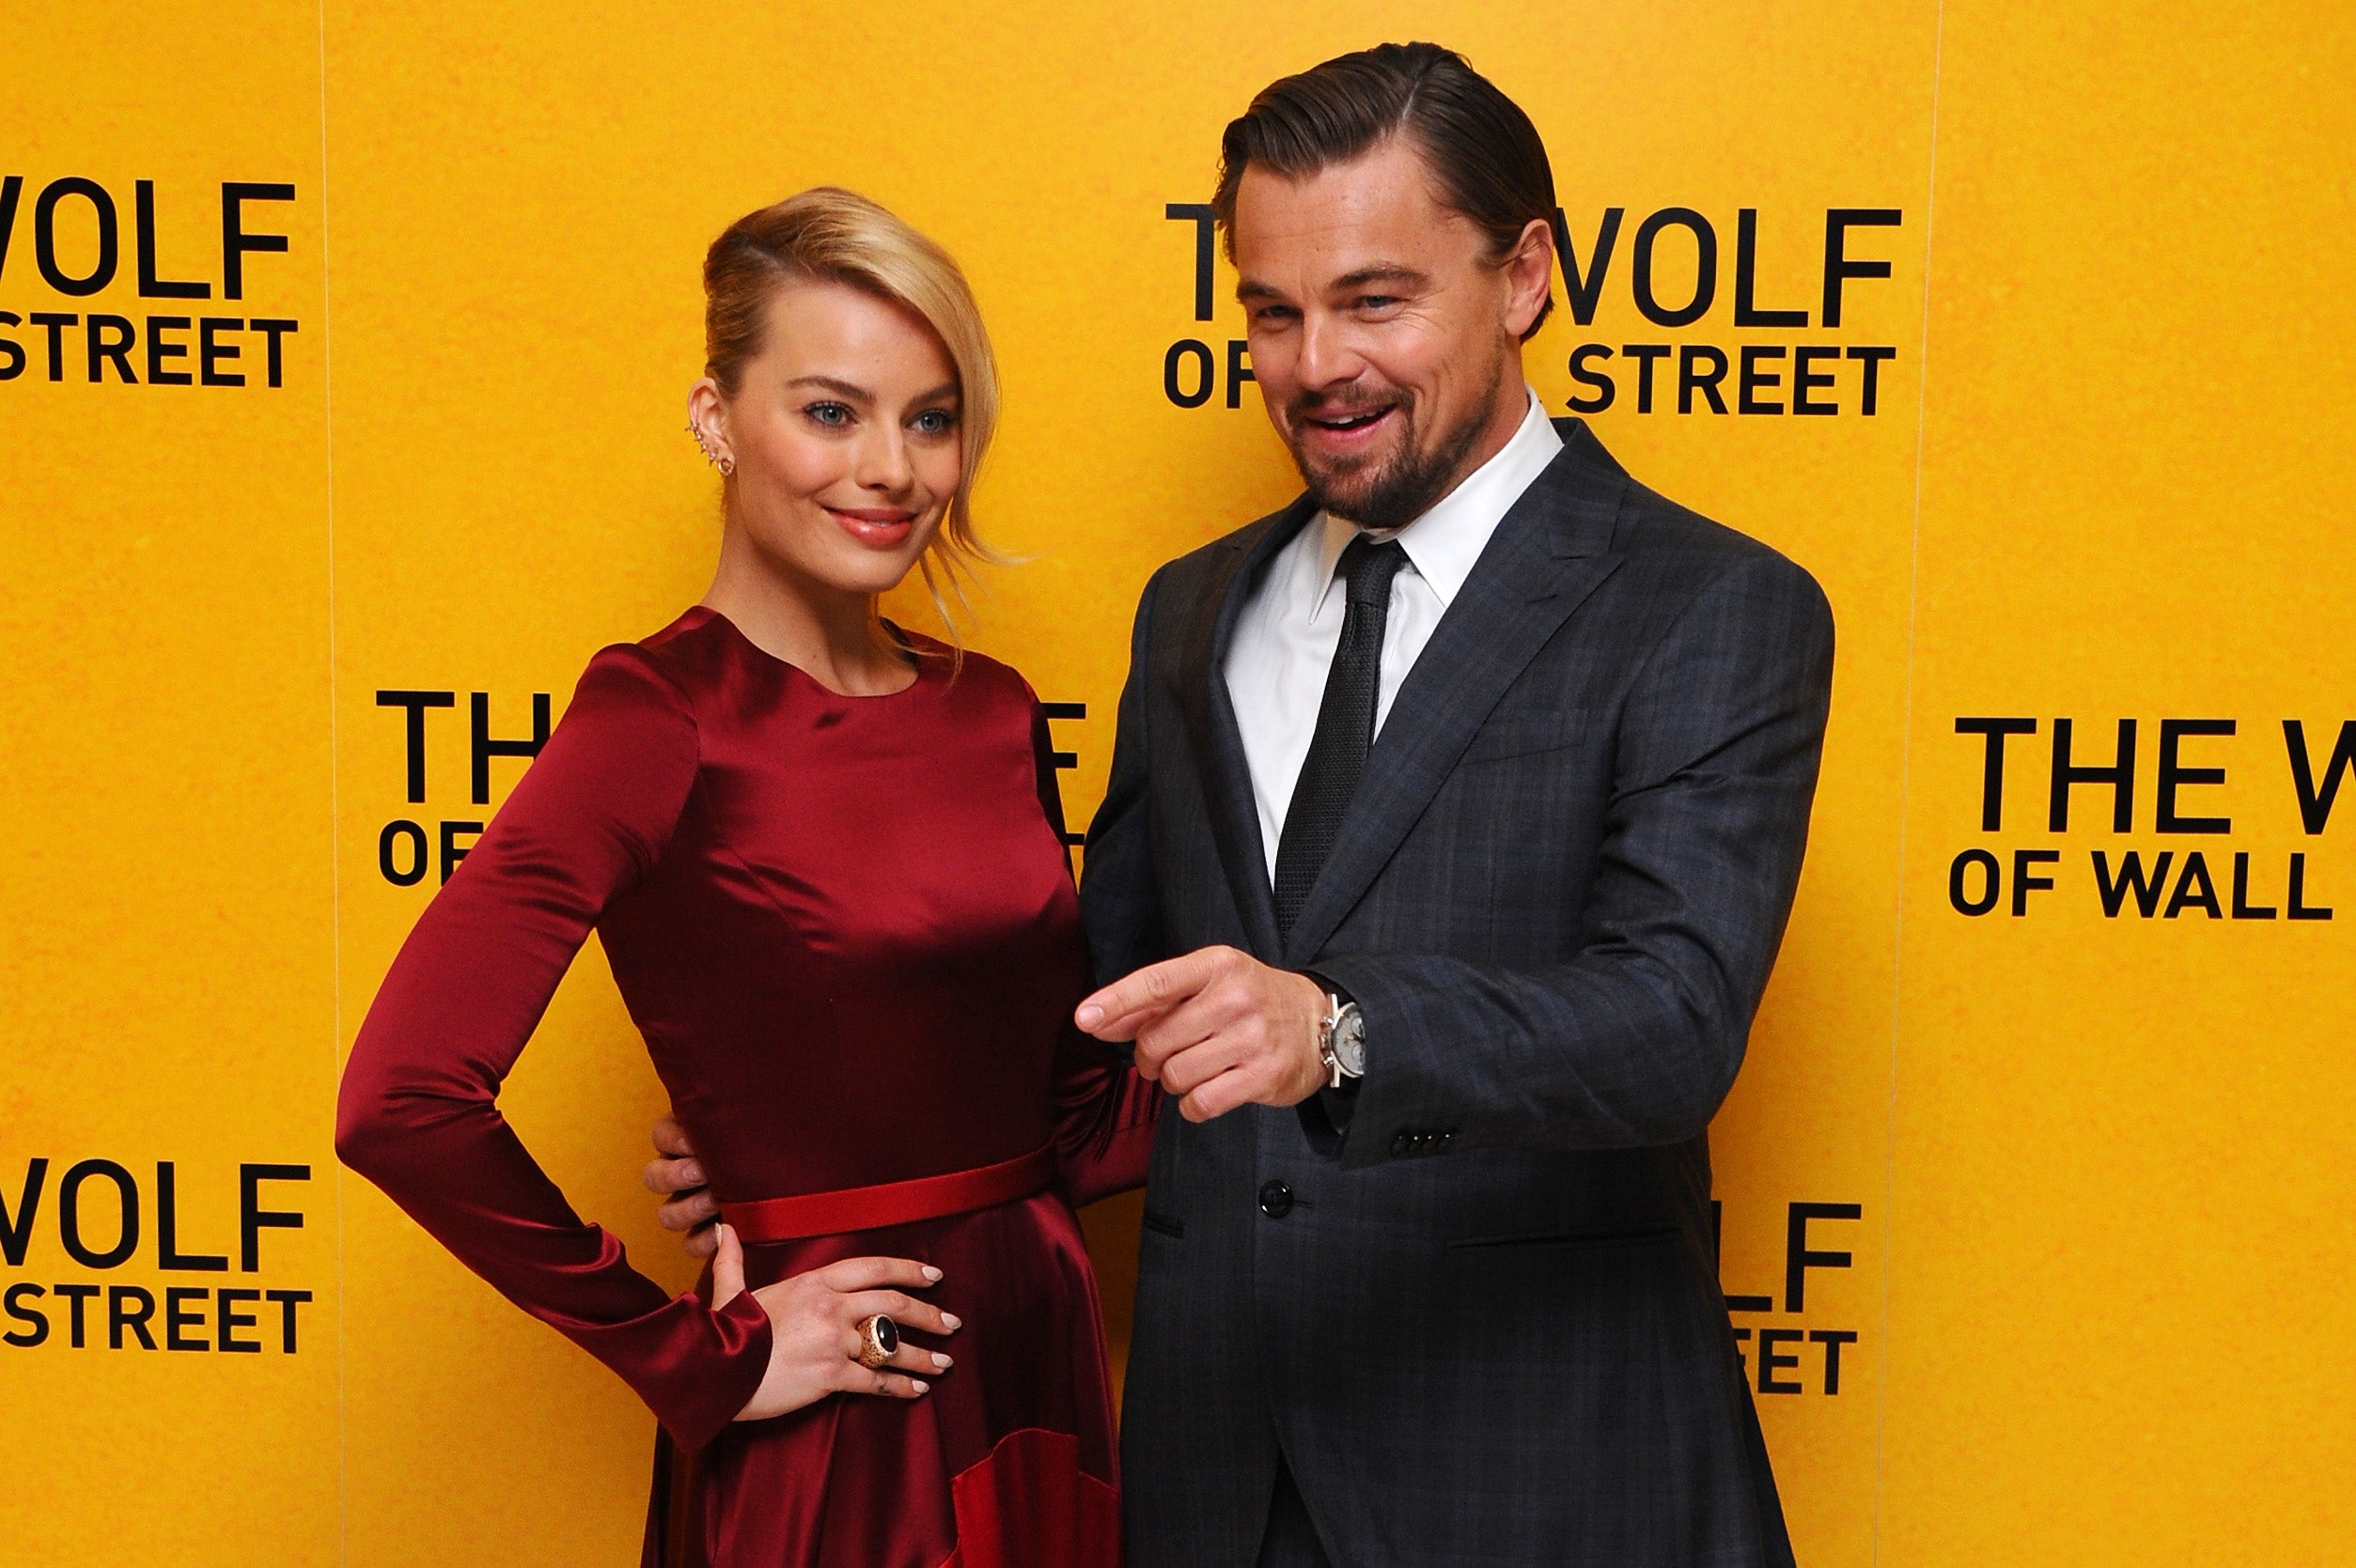 Margot Robbie y Leonardo DiCaprio participaron en una escena de sexo sobre una cama llena de dinero en ‘Wolf of Wall Street’